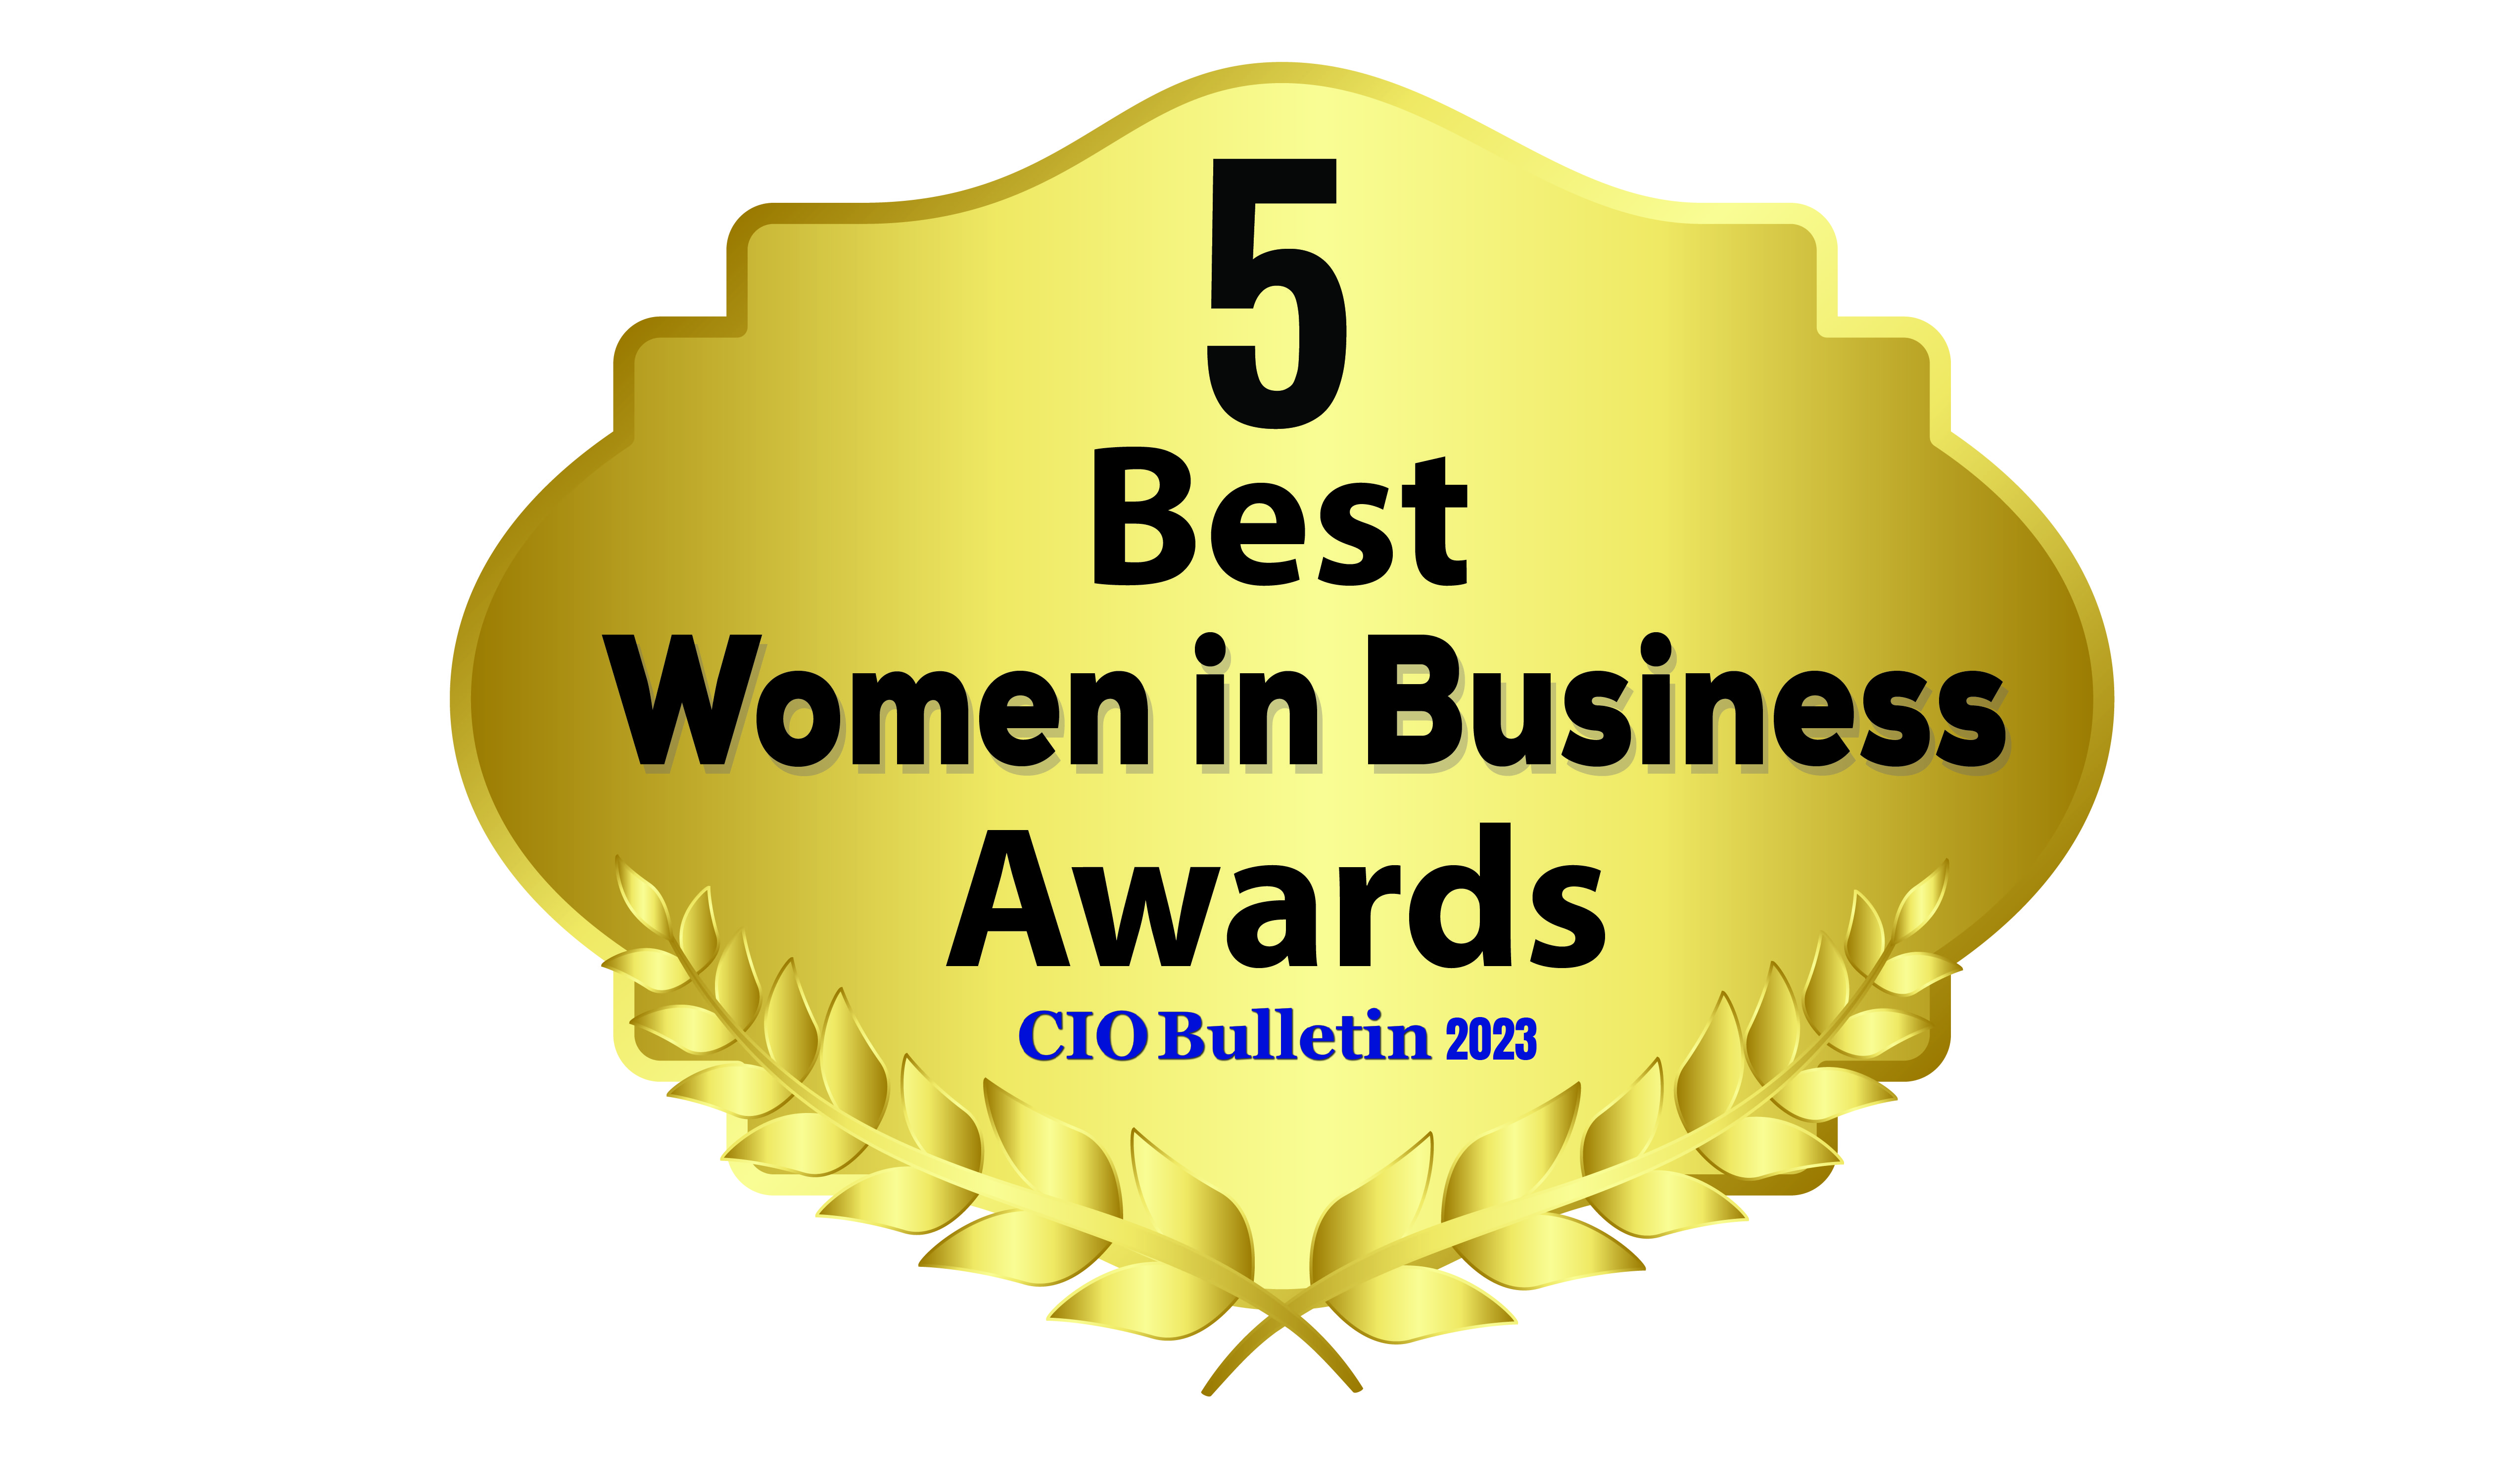 5 Best Women in Business Awards 2023